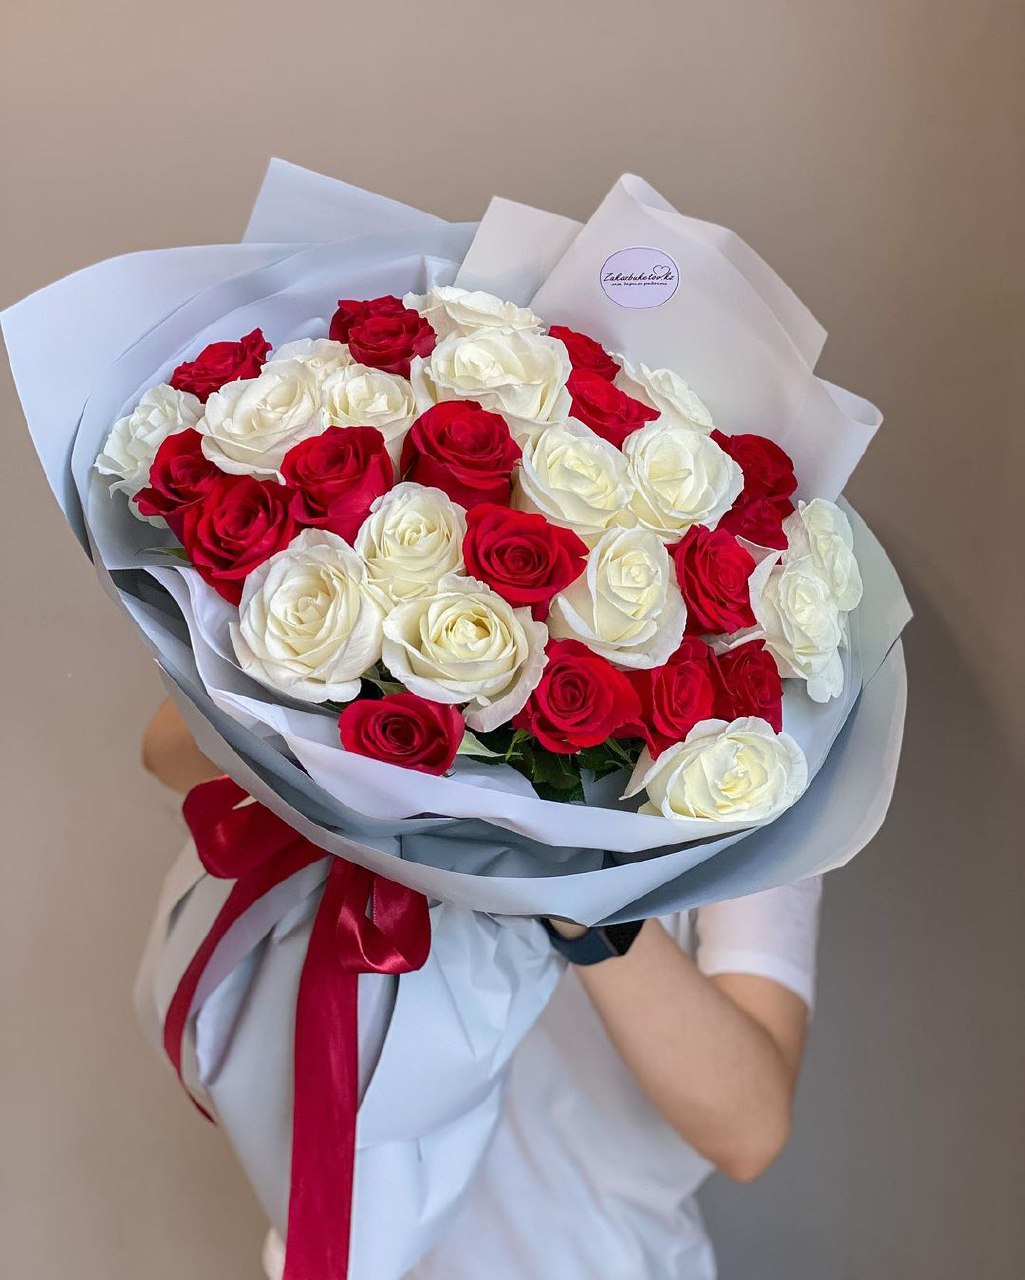 25 красно-белых роз